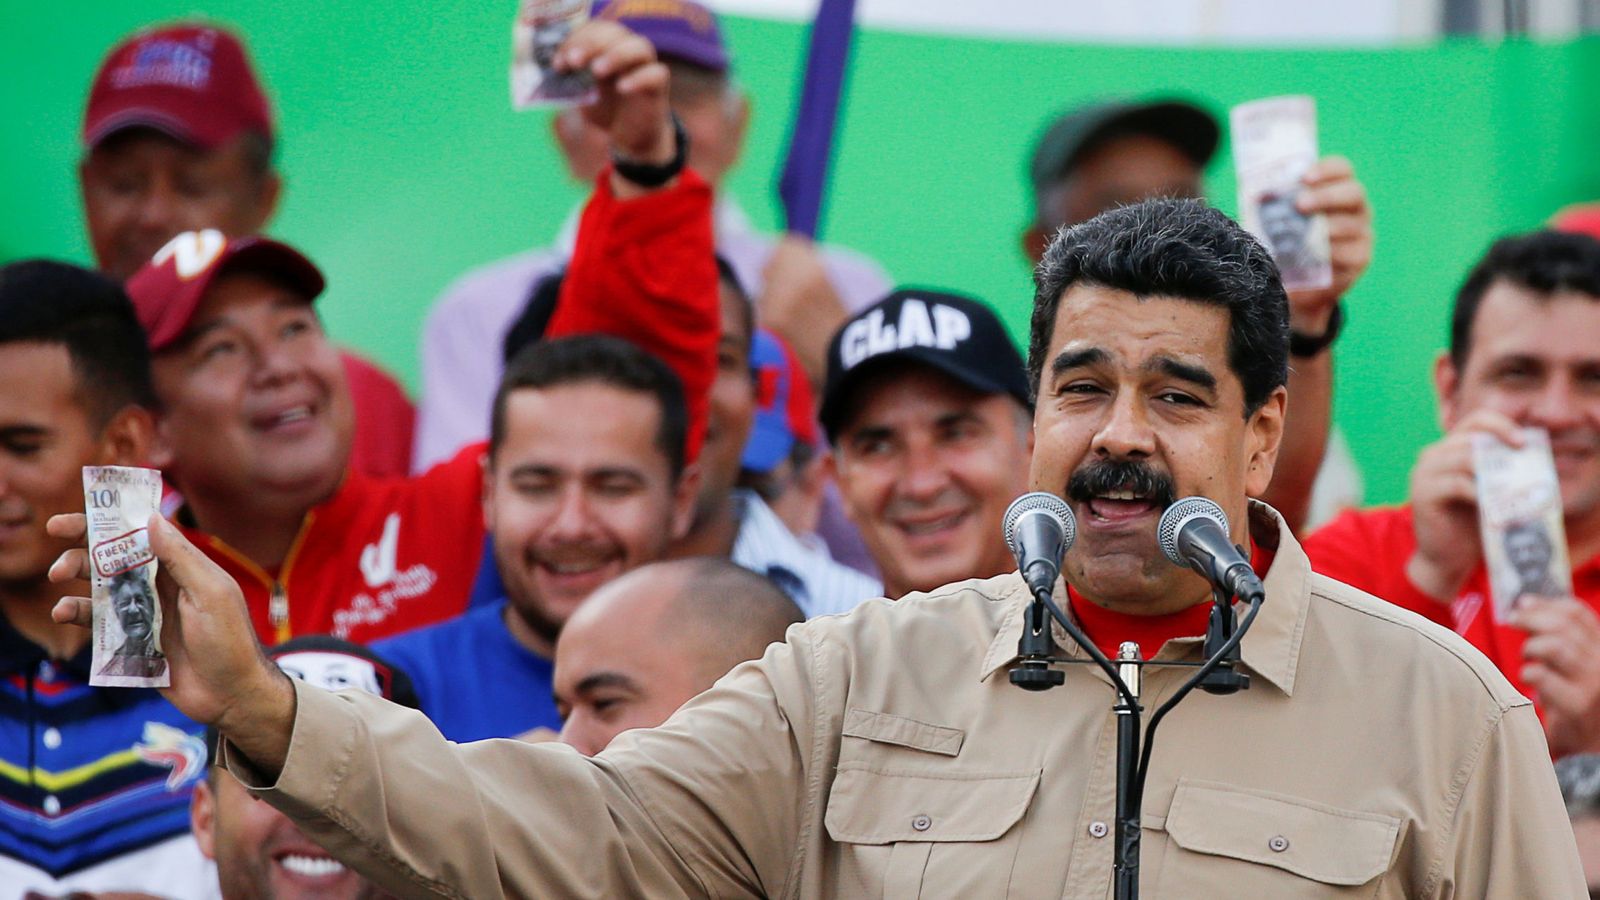 Foto: Nicolás Maduro sujeta un billete de 100 bolívares defendiendo su retirada en un mitin. (Reuters)